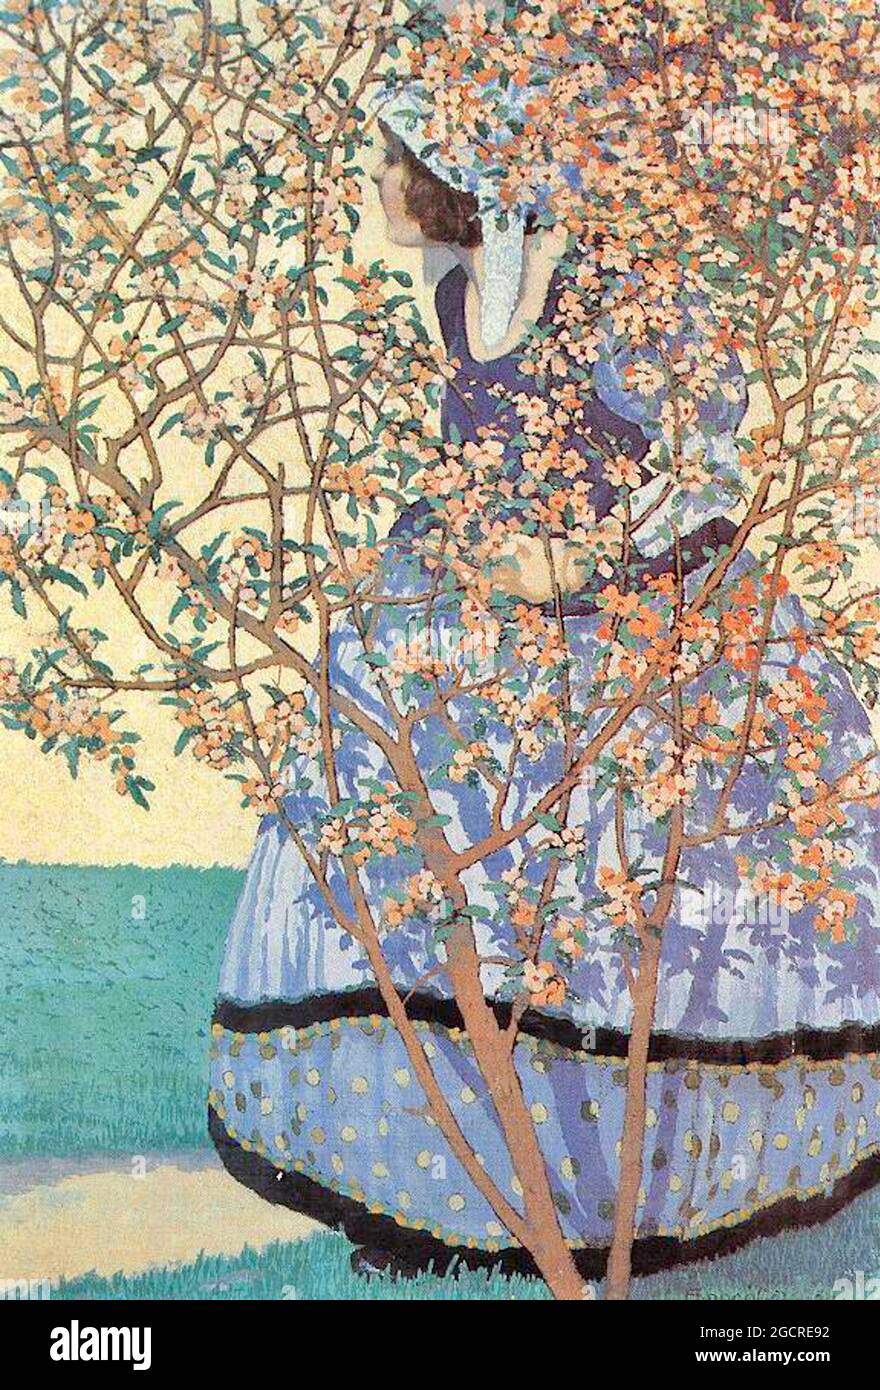 Géza Faragó œuvre intitulée parmi les fleurs - 1911 - la femme costumée regarde au loin derrière l'arbre de fleurs. Banque D'Images